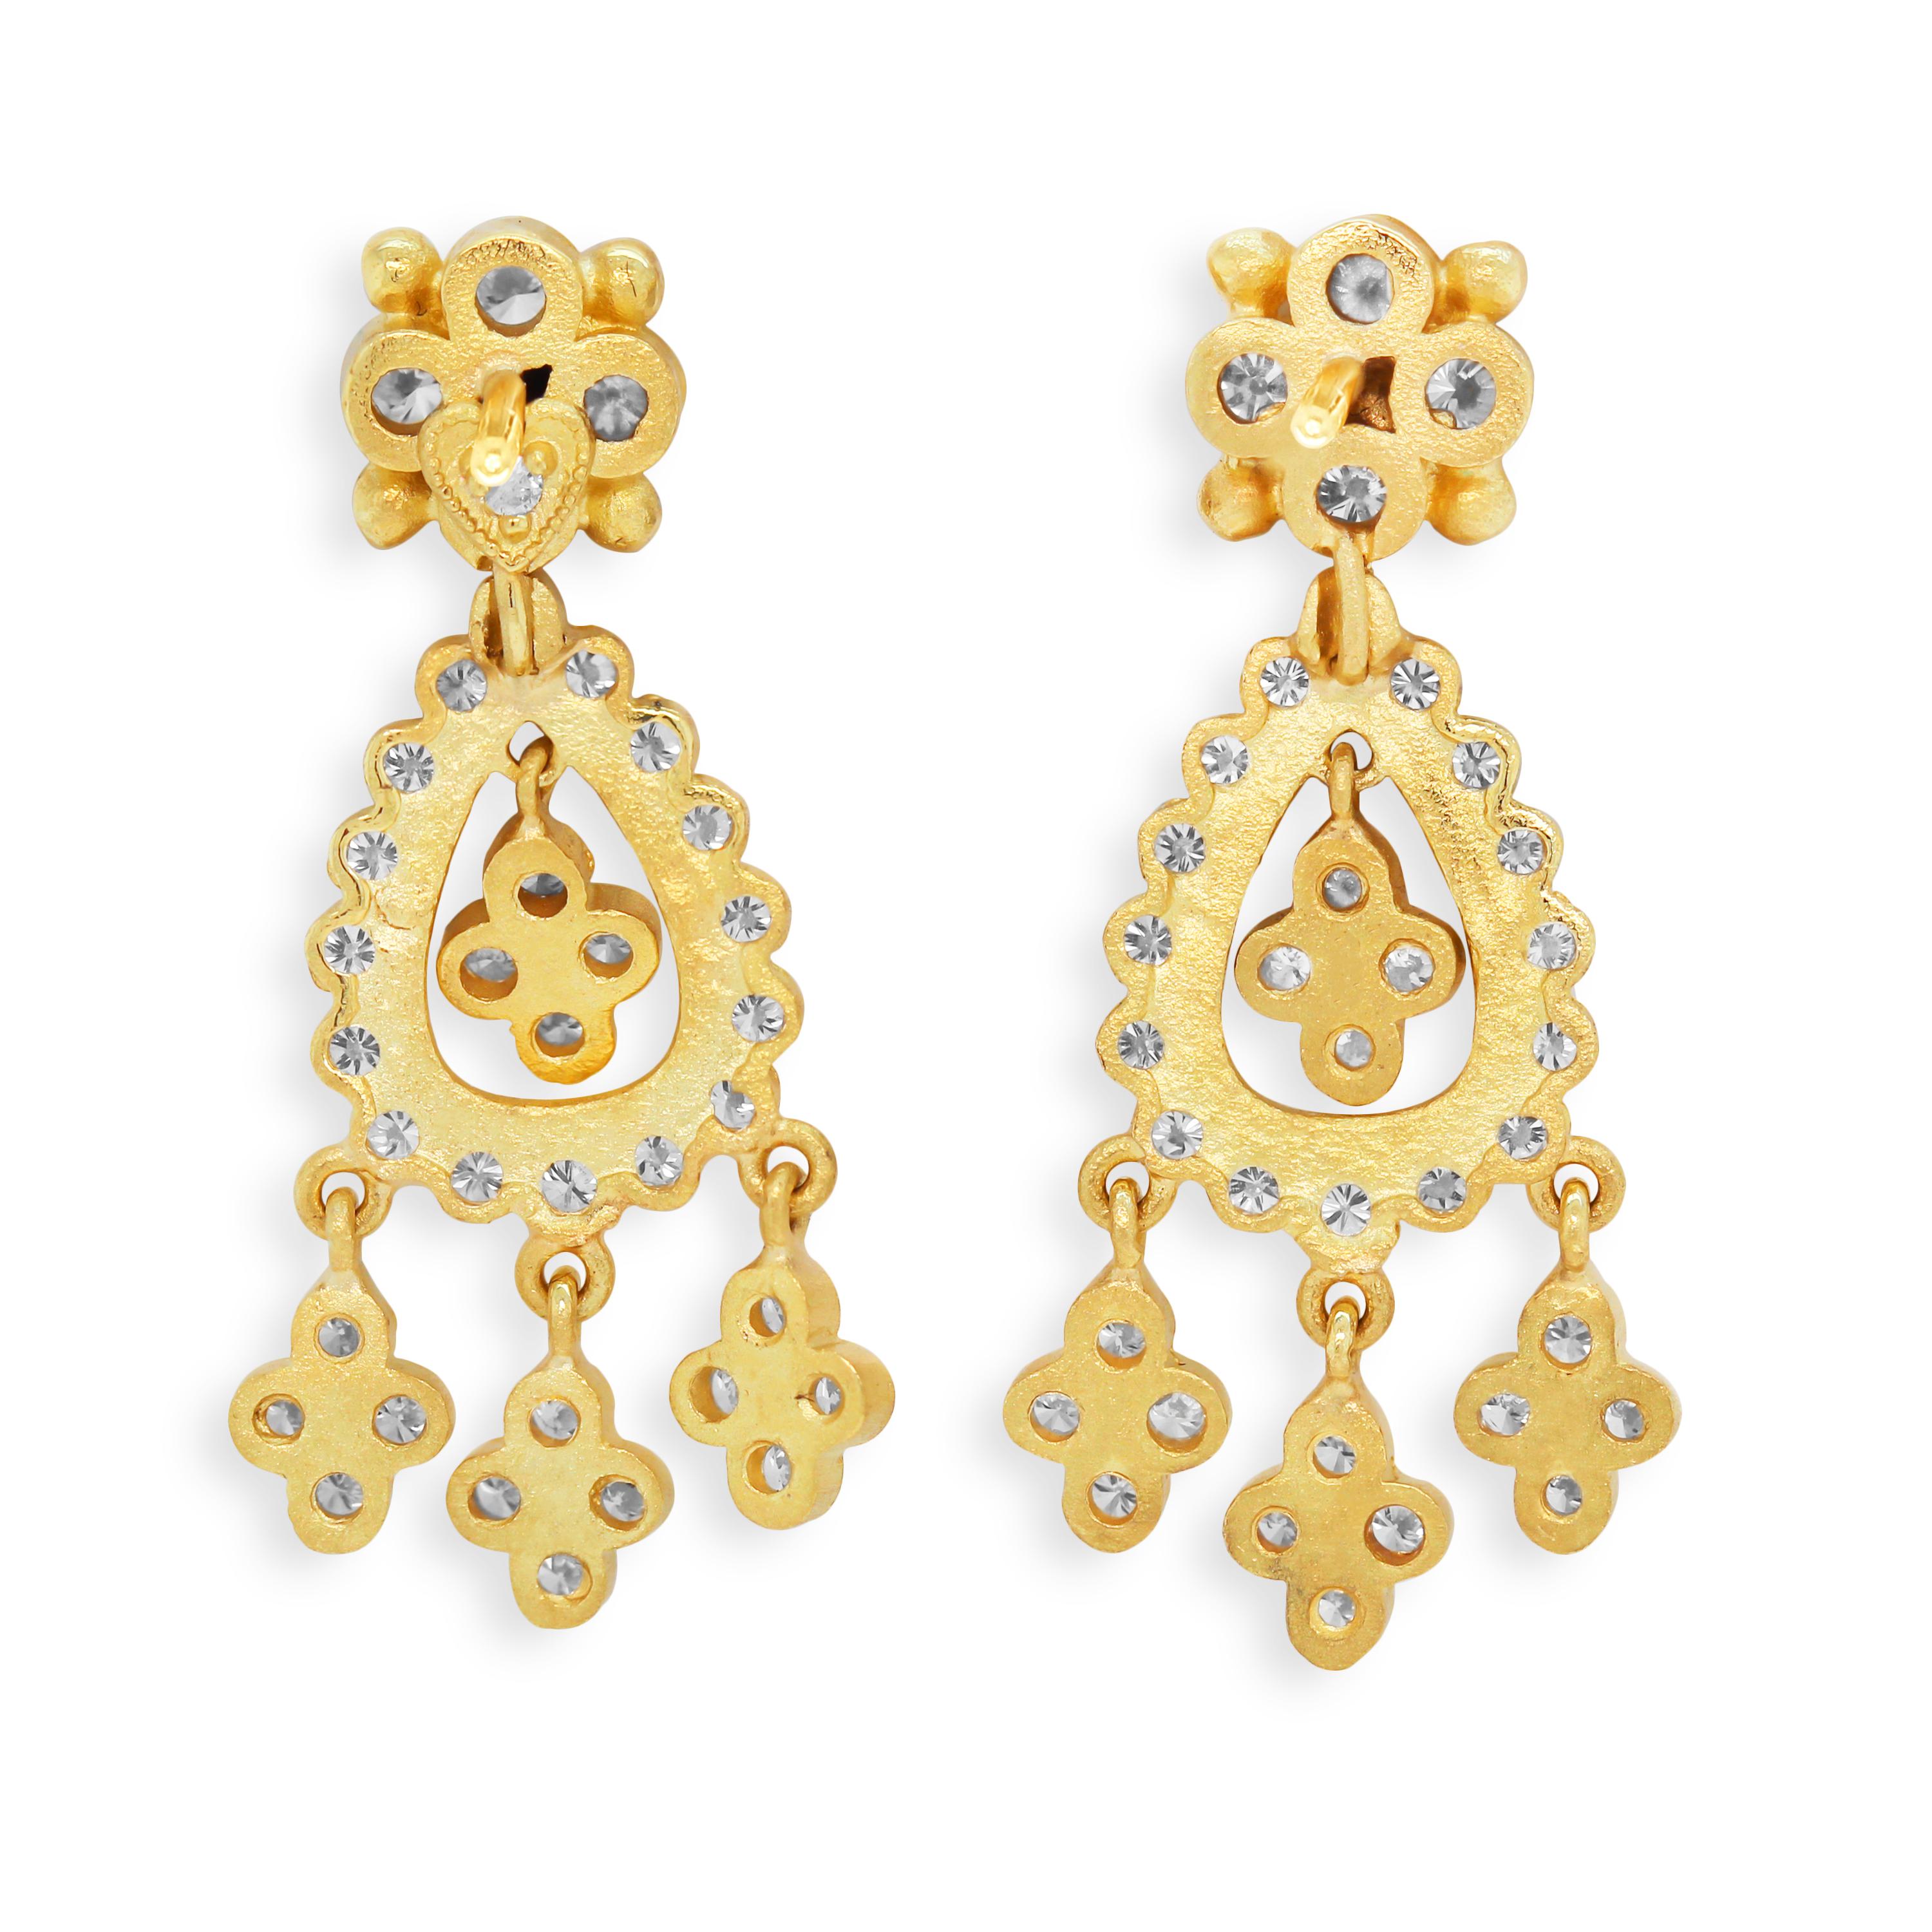 Stambolian Pendants d'oreilles en or jaune 18 carats et diamants

Issue de la collection Stambolian 